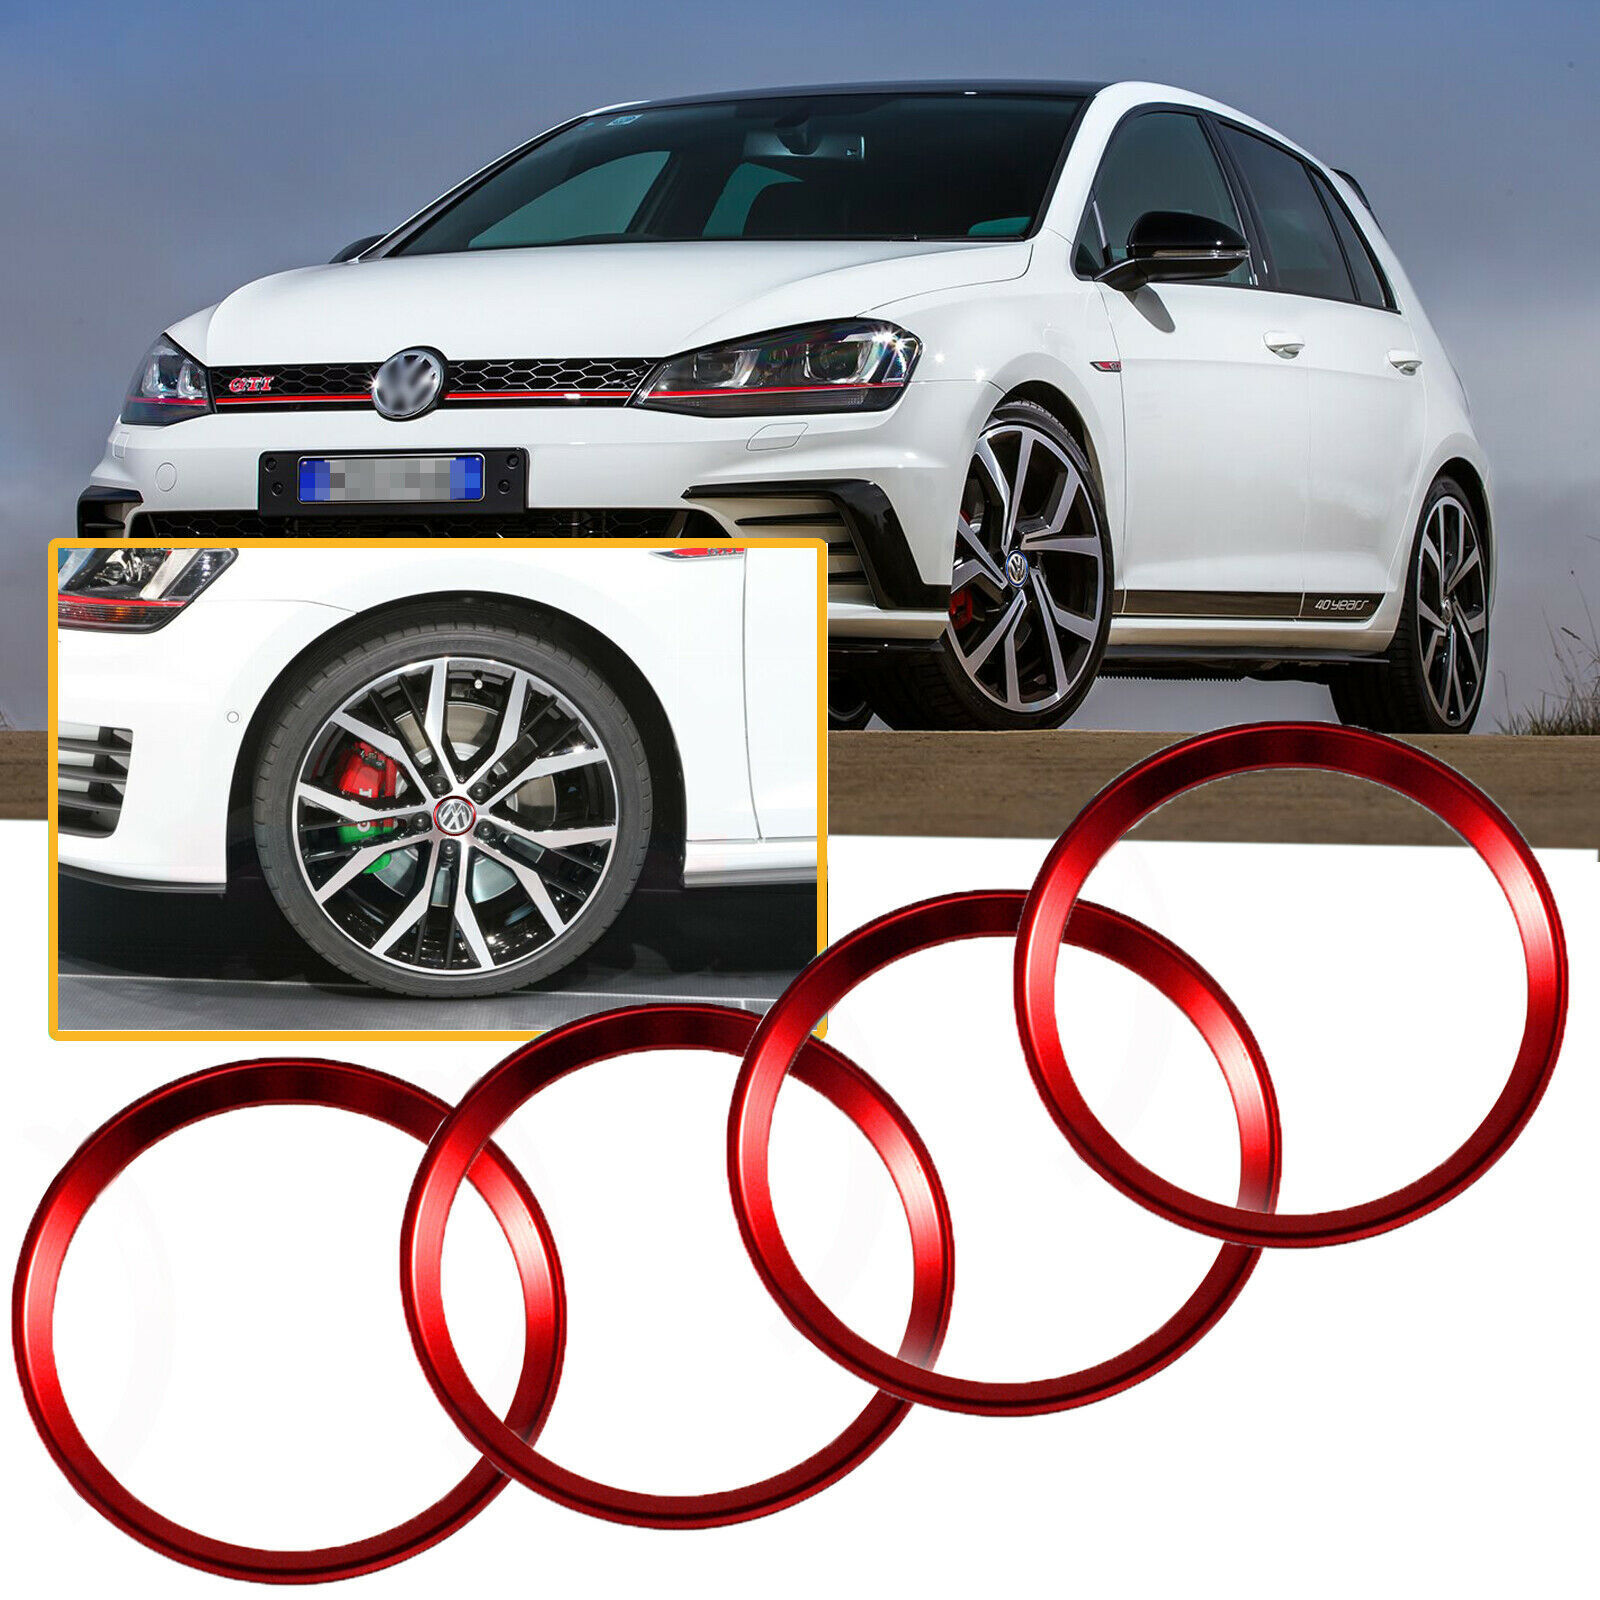 RED Wheel Center Cap Hub Rings Decor For Volkswagen Beetle GTI Golf Jetta etc